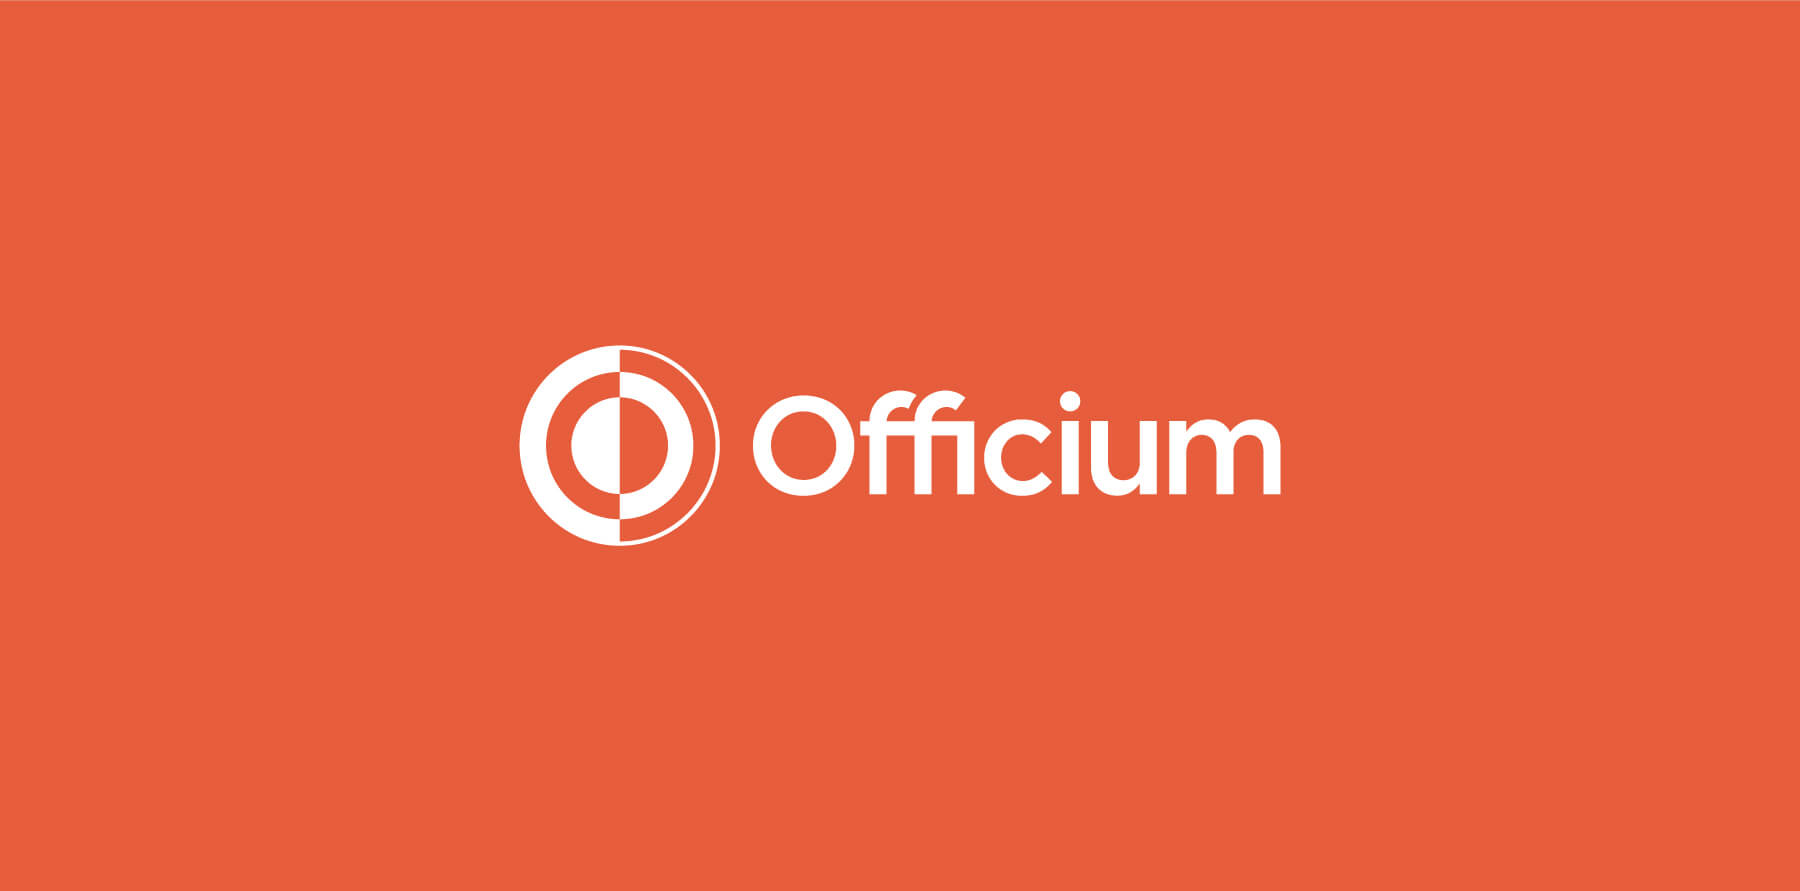 Officium-Brand-Identity